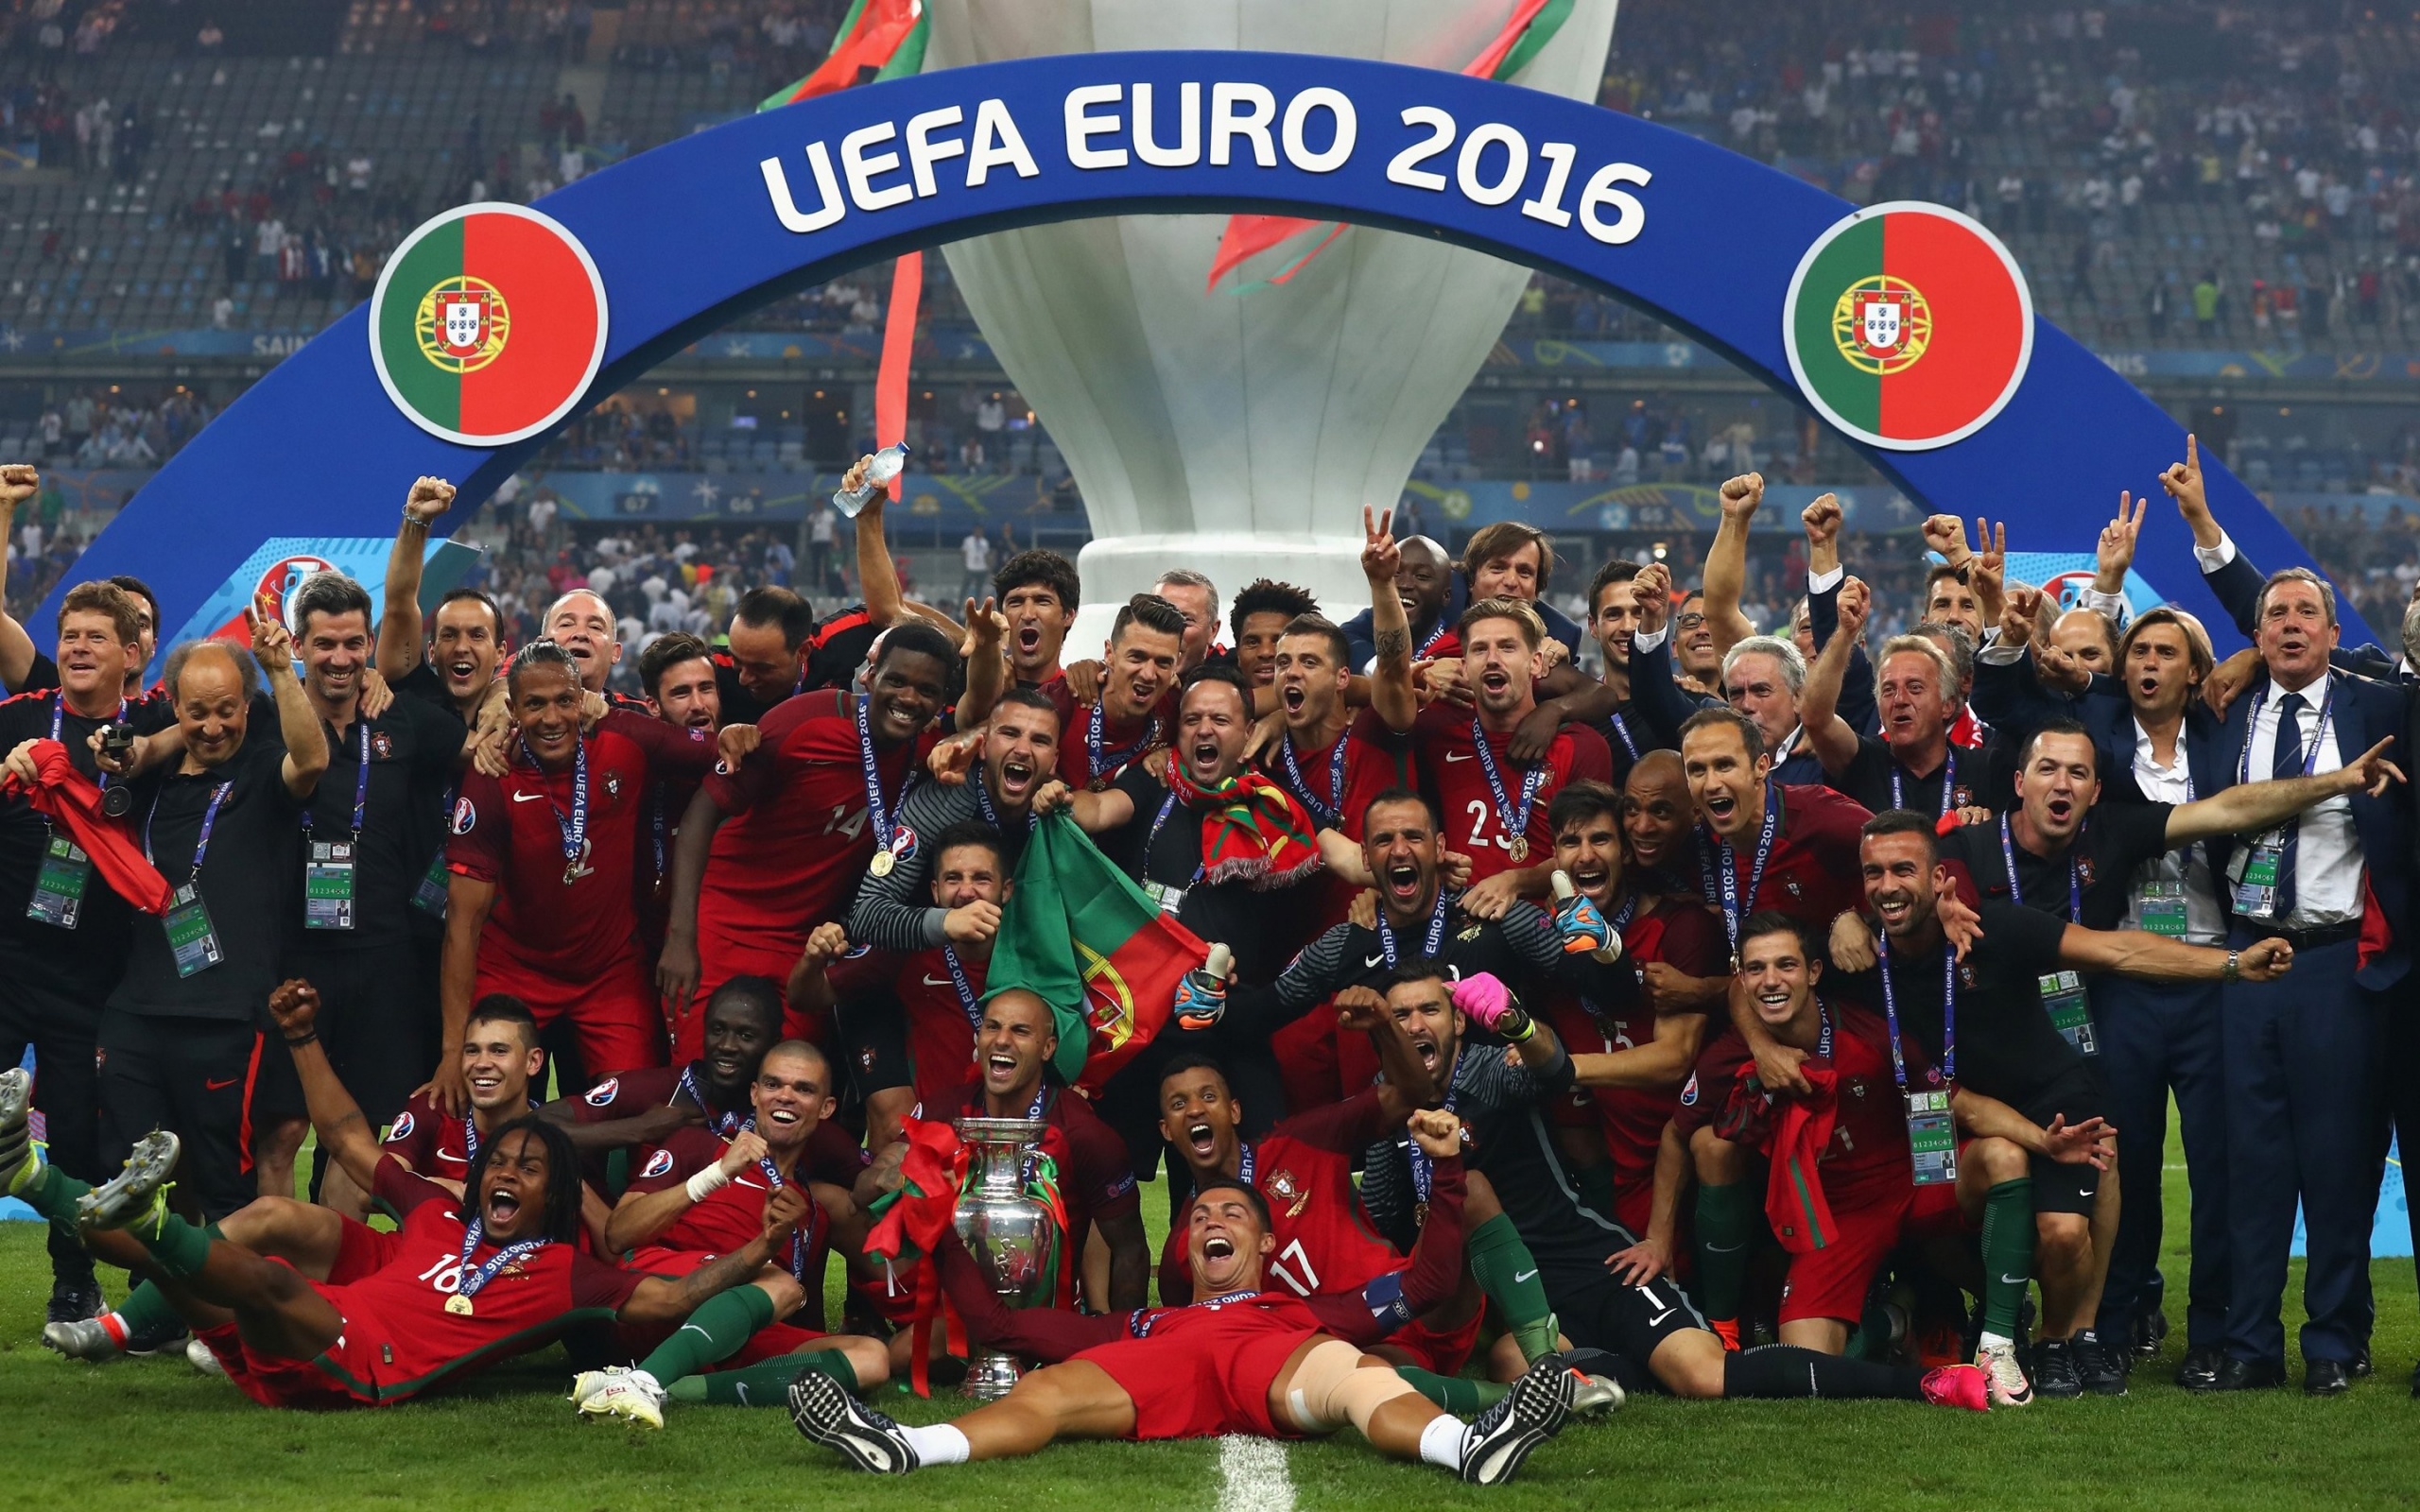 Национальный уефа. Сборная Португалии евро 2016. Португалия чемпион Европы 2016. Португалия победитель евро 2016. Португалия футбол евро 2016.